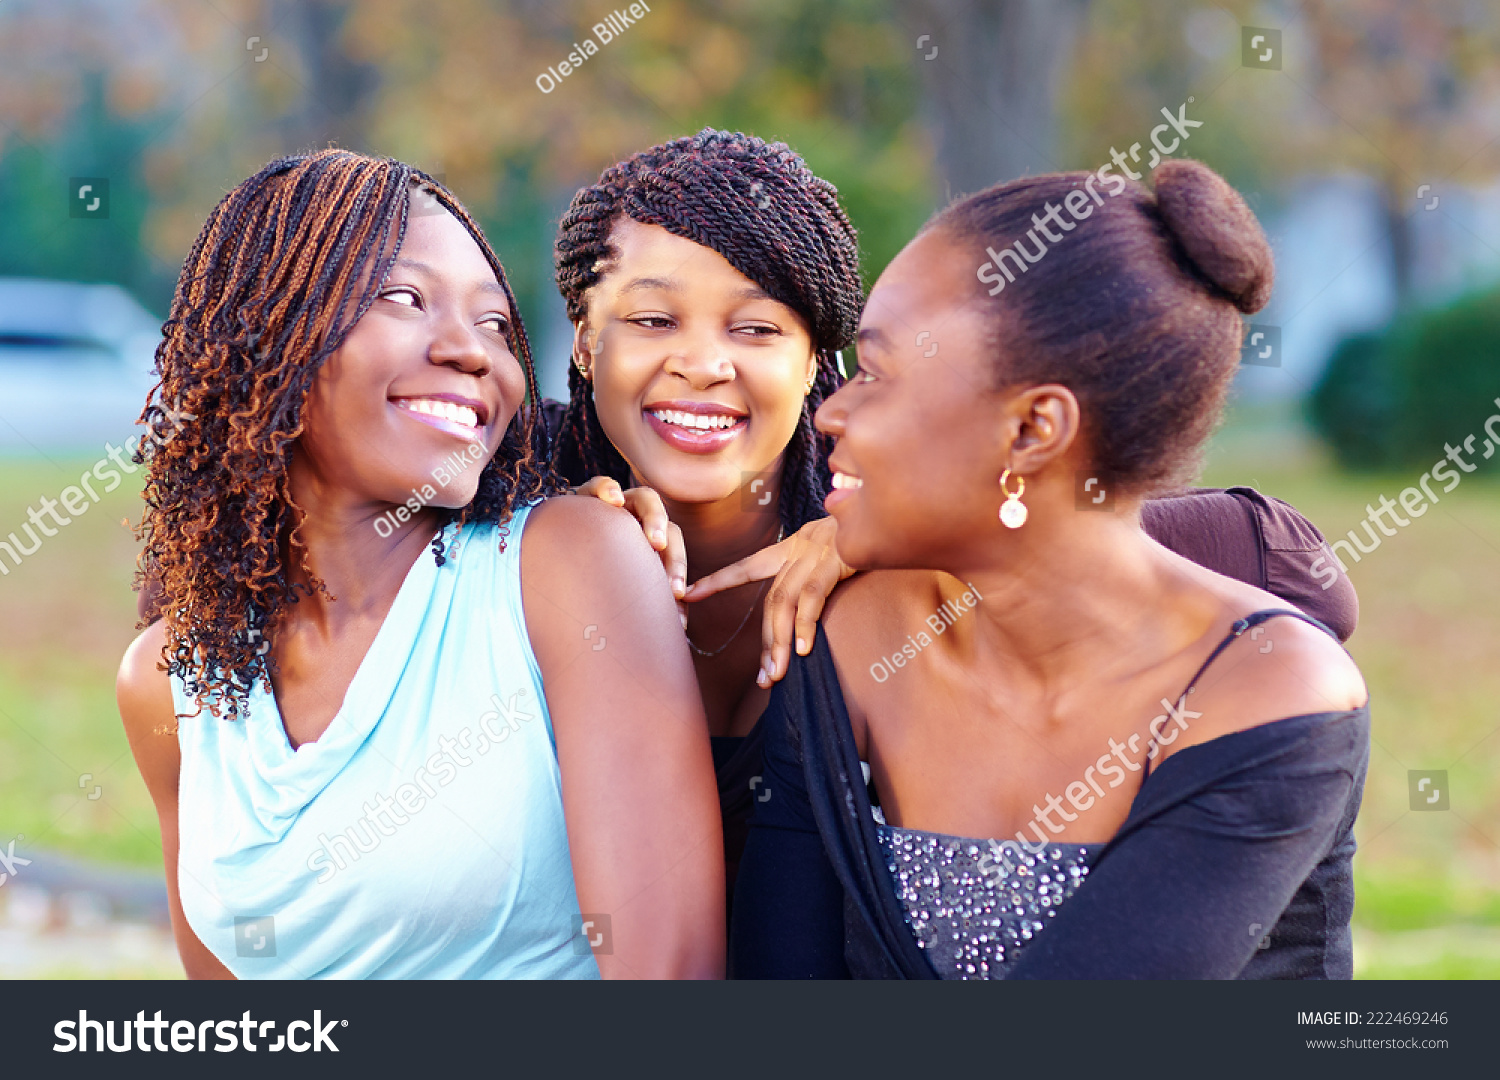 African women gathering Images, Stock Photos & Vectors | Shutterstock